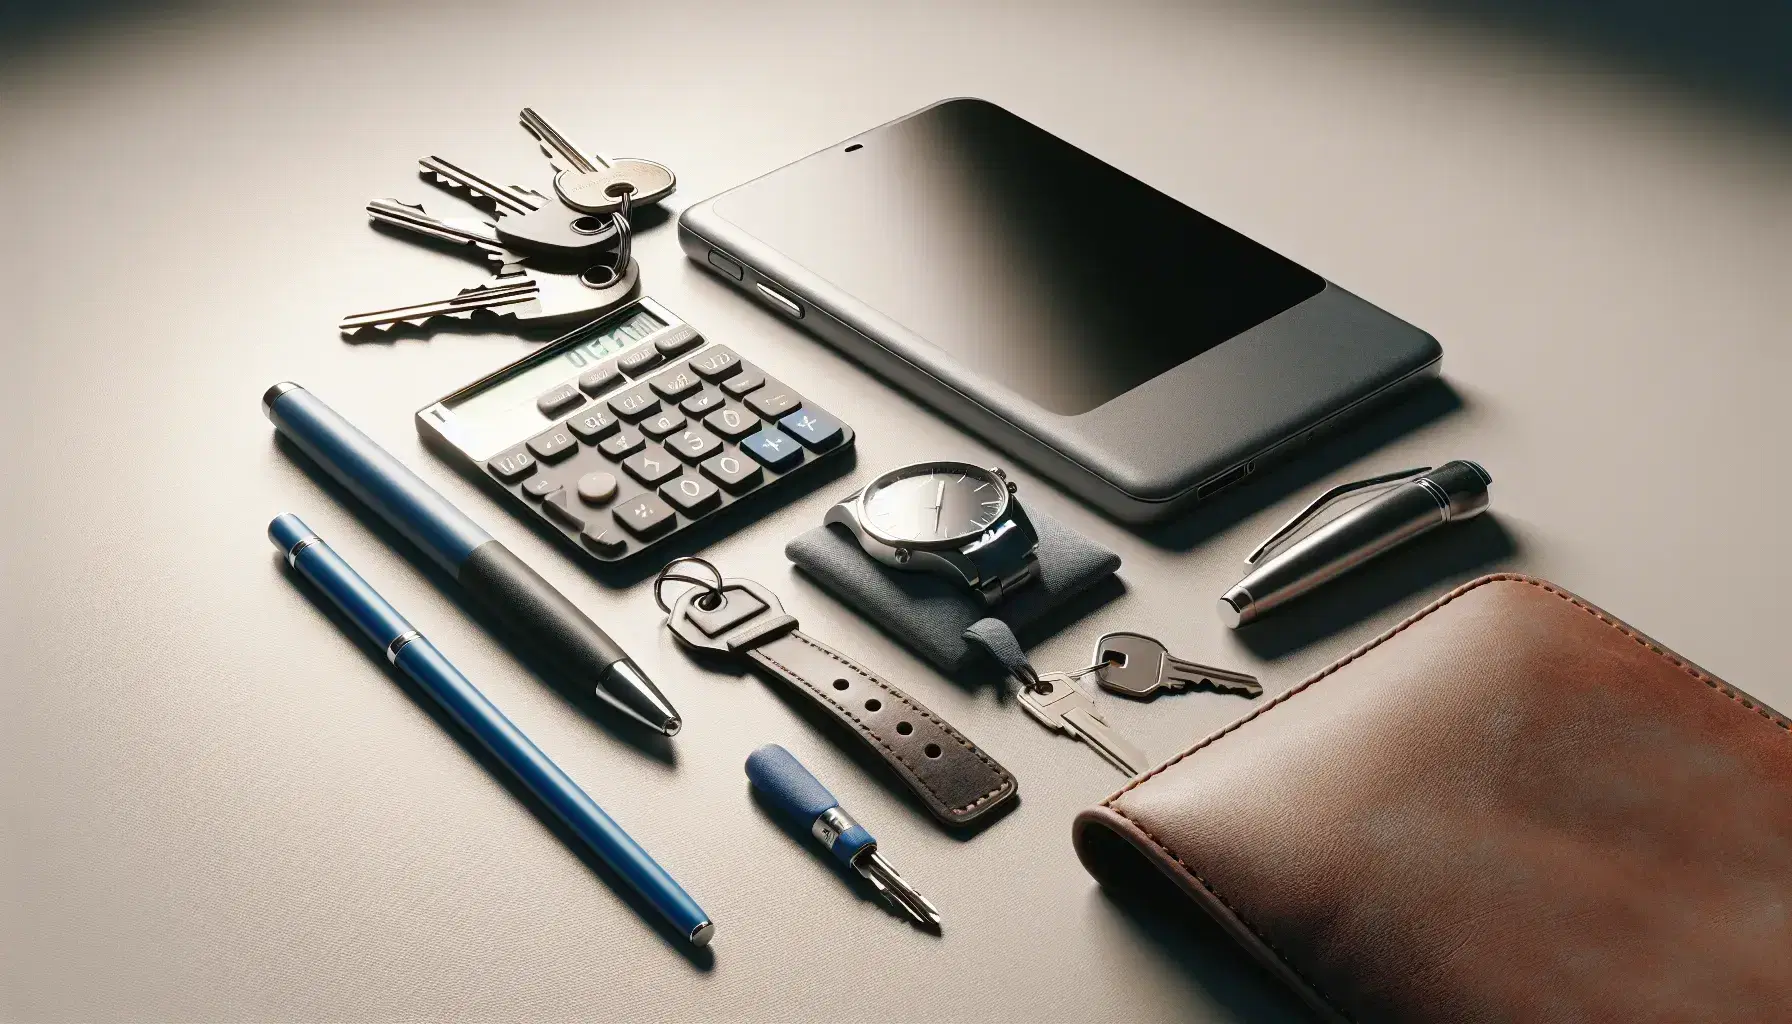 Calculadora gris con botones blancos, bolígrafo azul, reloj de pulsera con correa de cuero marrón, llaves metálicas y teléfono móvil moderno apagado sobre superficie clara.